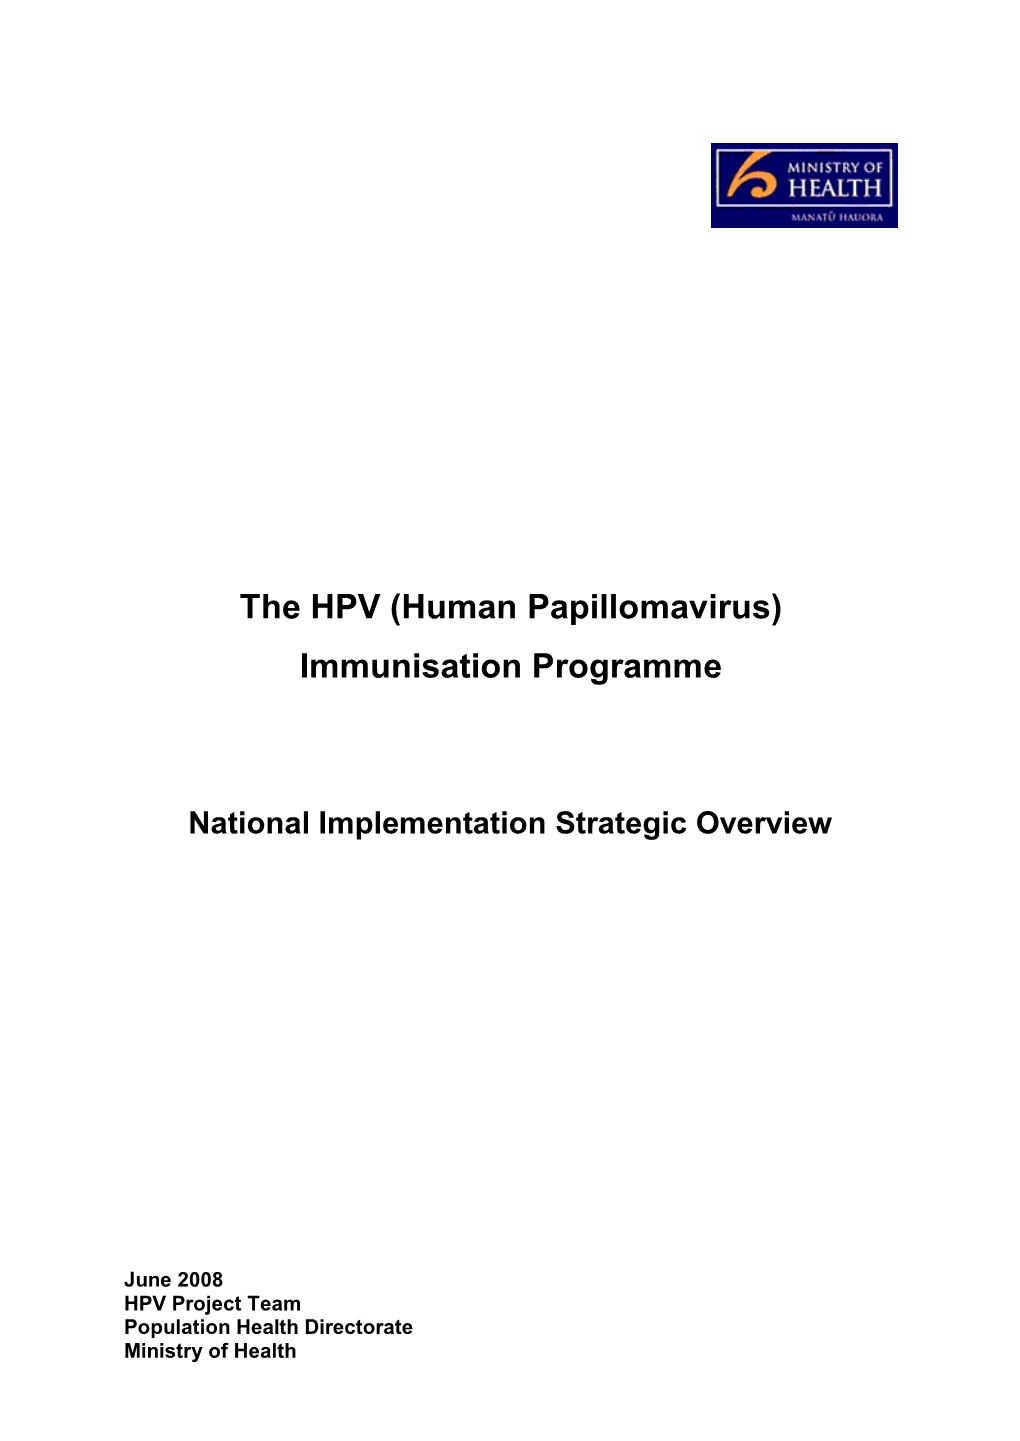 The HPV (Human Papillomavirus) Immunisation Programme